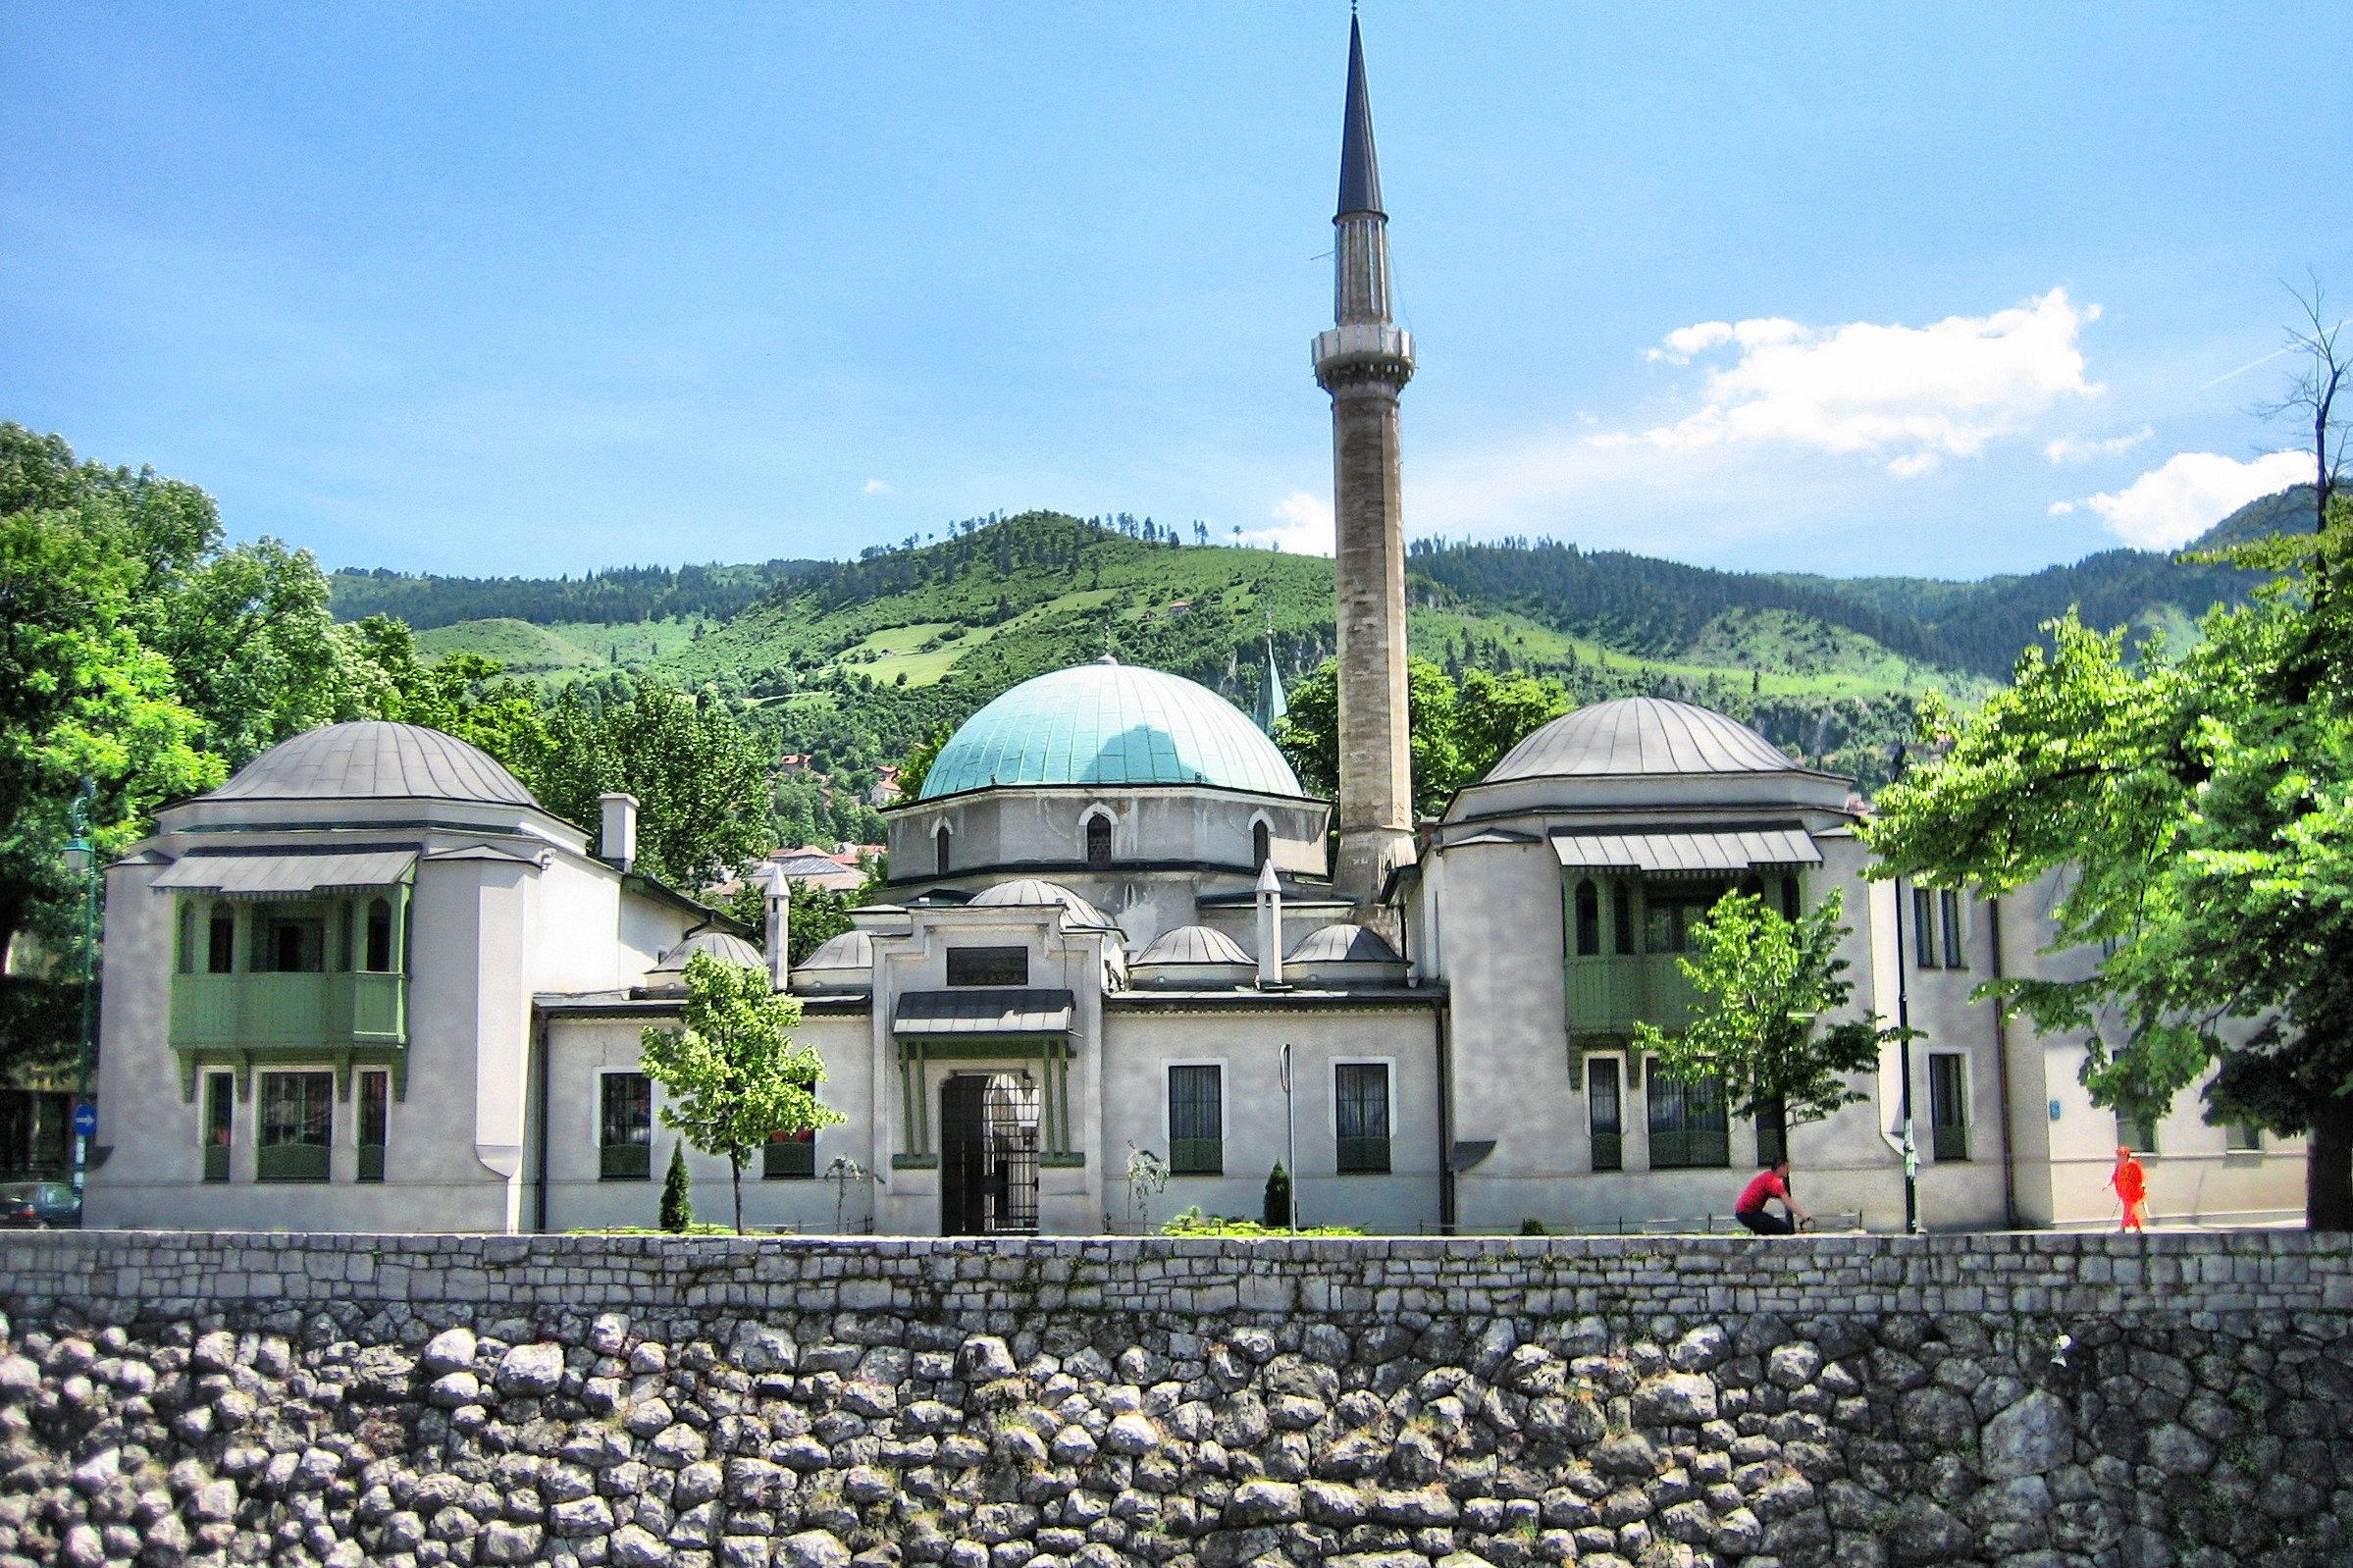 المساجد، العلامة الأبرز للتراث العثماني في سراييفو